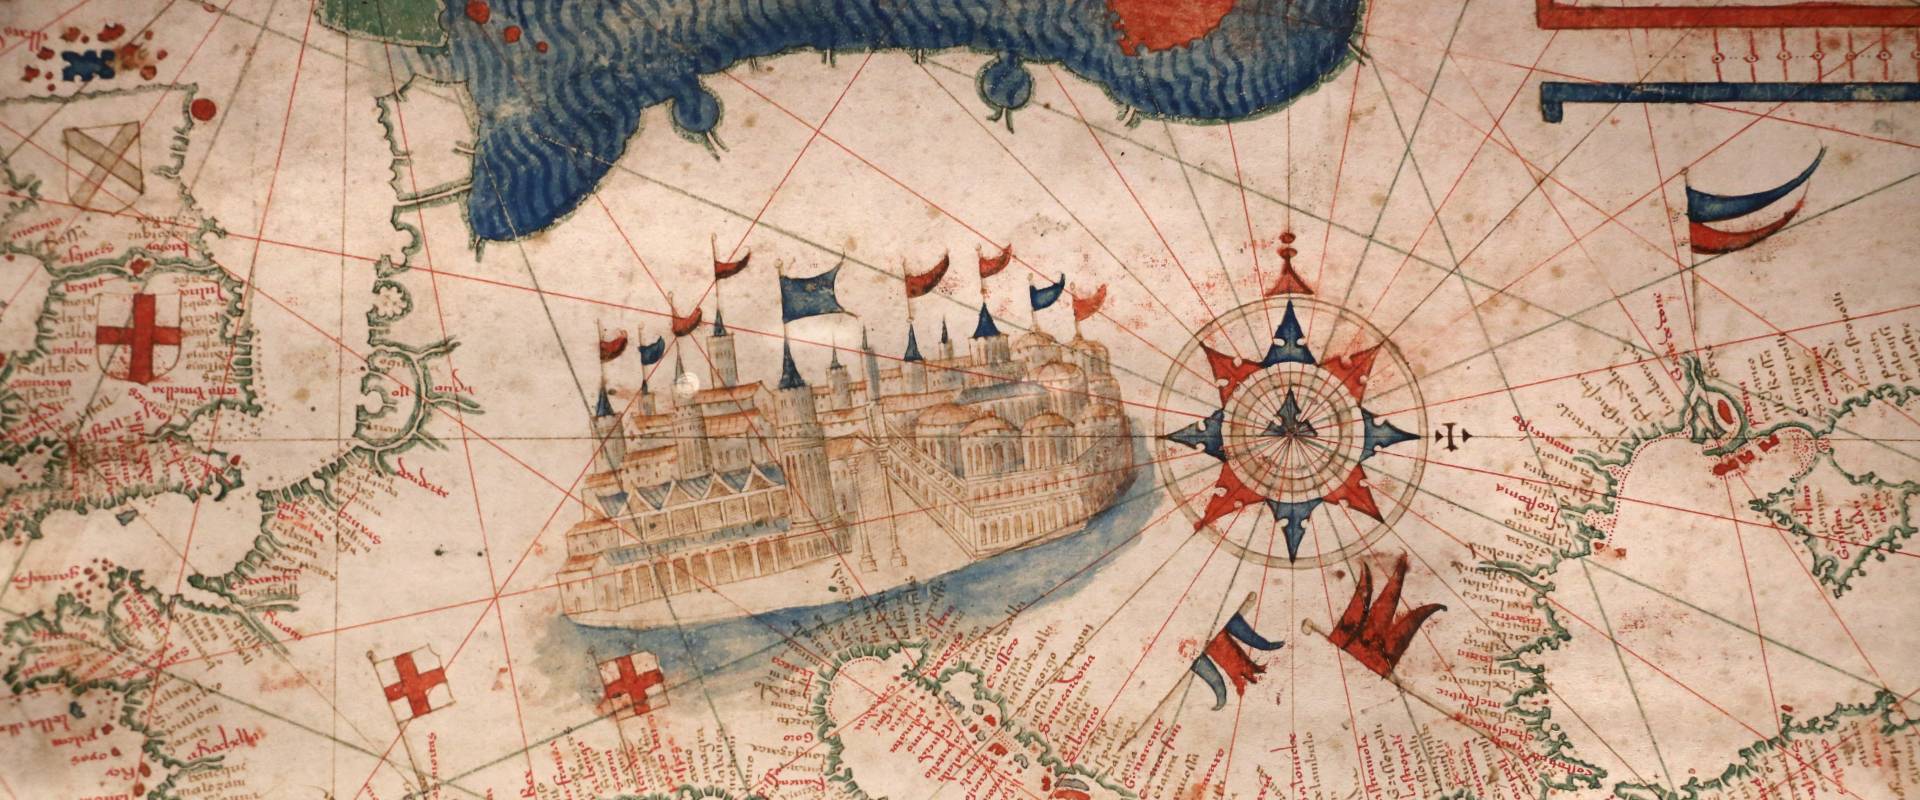 Anonimo portoghese, carta navale per le isole nuovamente trovate in la parte dell'india (de cantino), 1501-02 (bibl. estense) 04 photo by Sailko